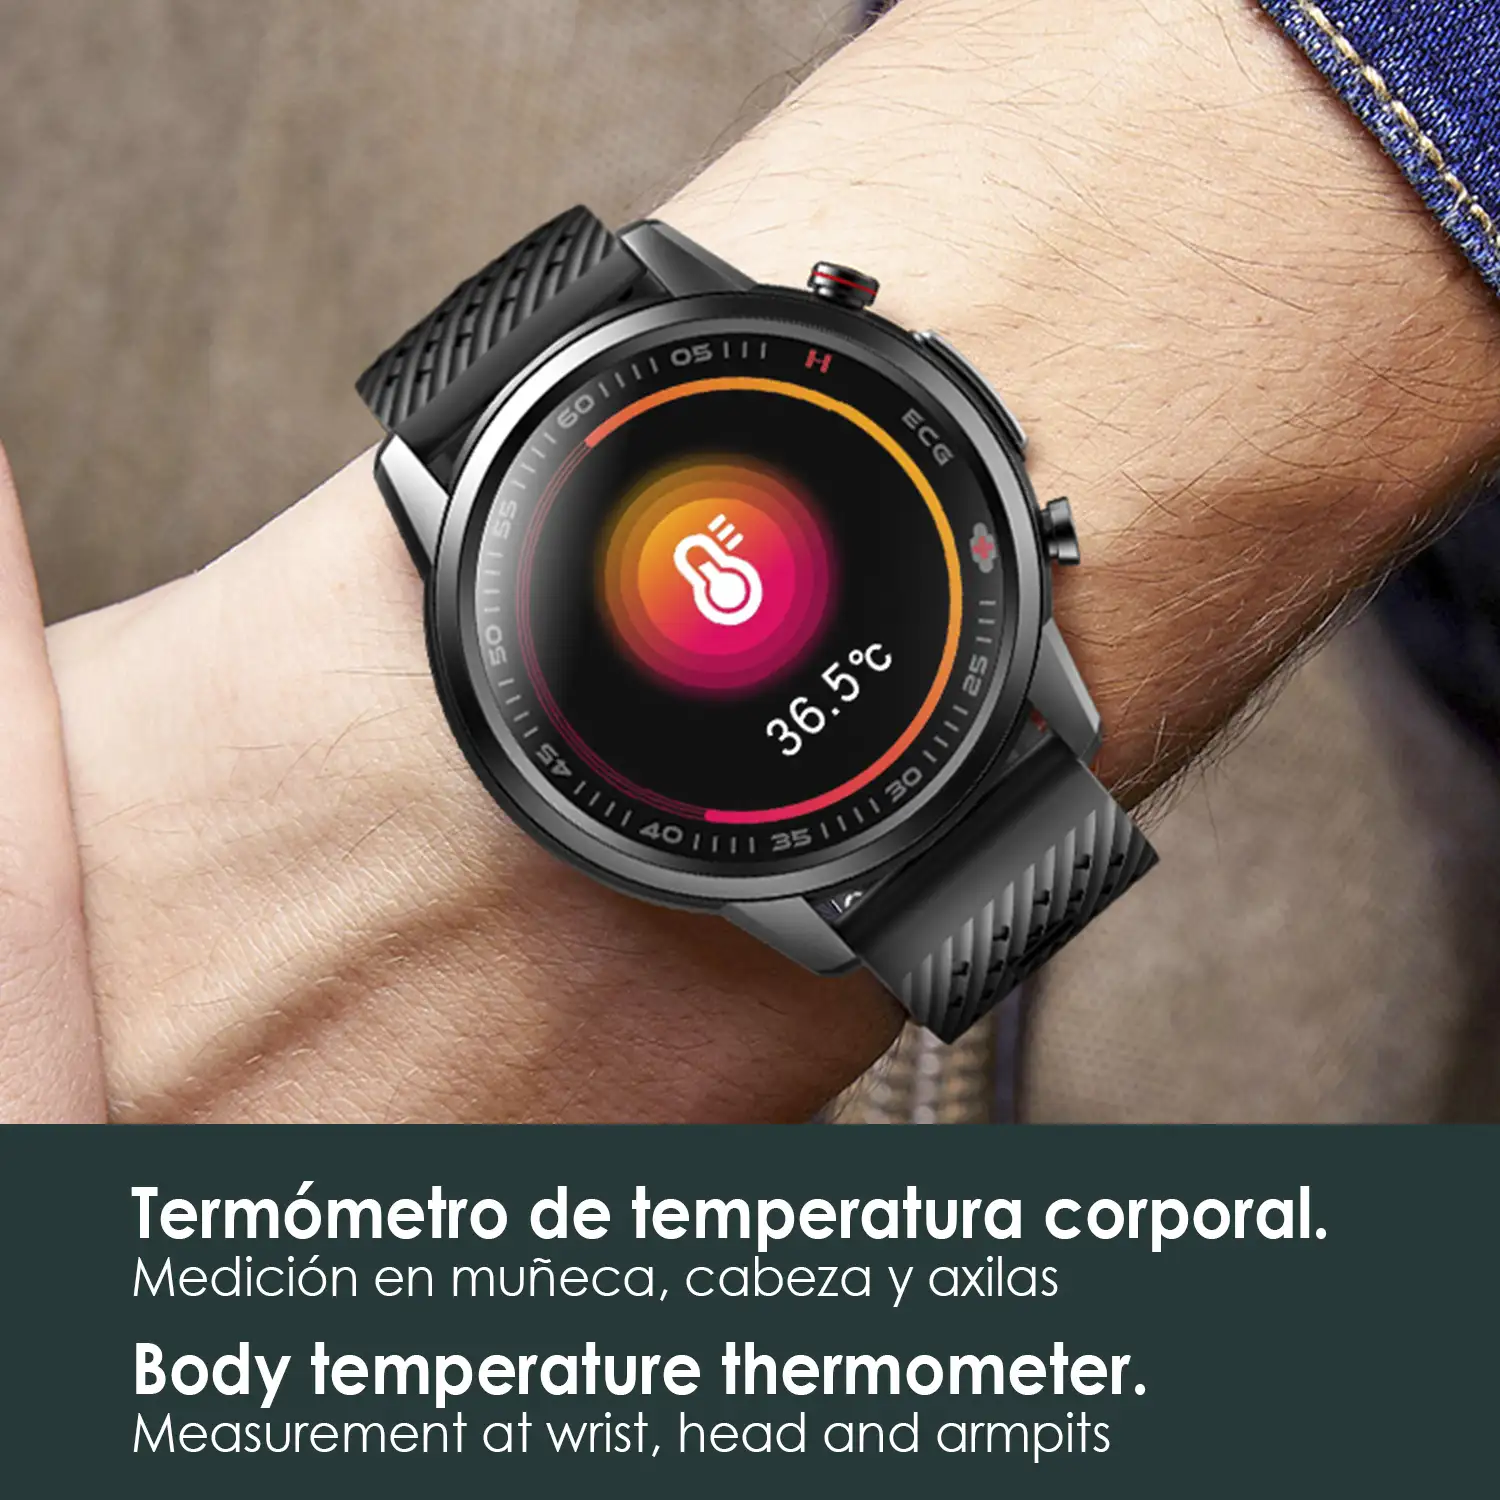 Smartwatch F800 con tratamiento laser sanguíneo, termómetro corporal, monitor cardíaco y de O2 en sangre. 5 modos deportivos.